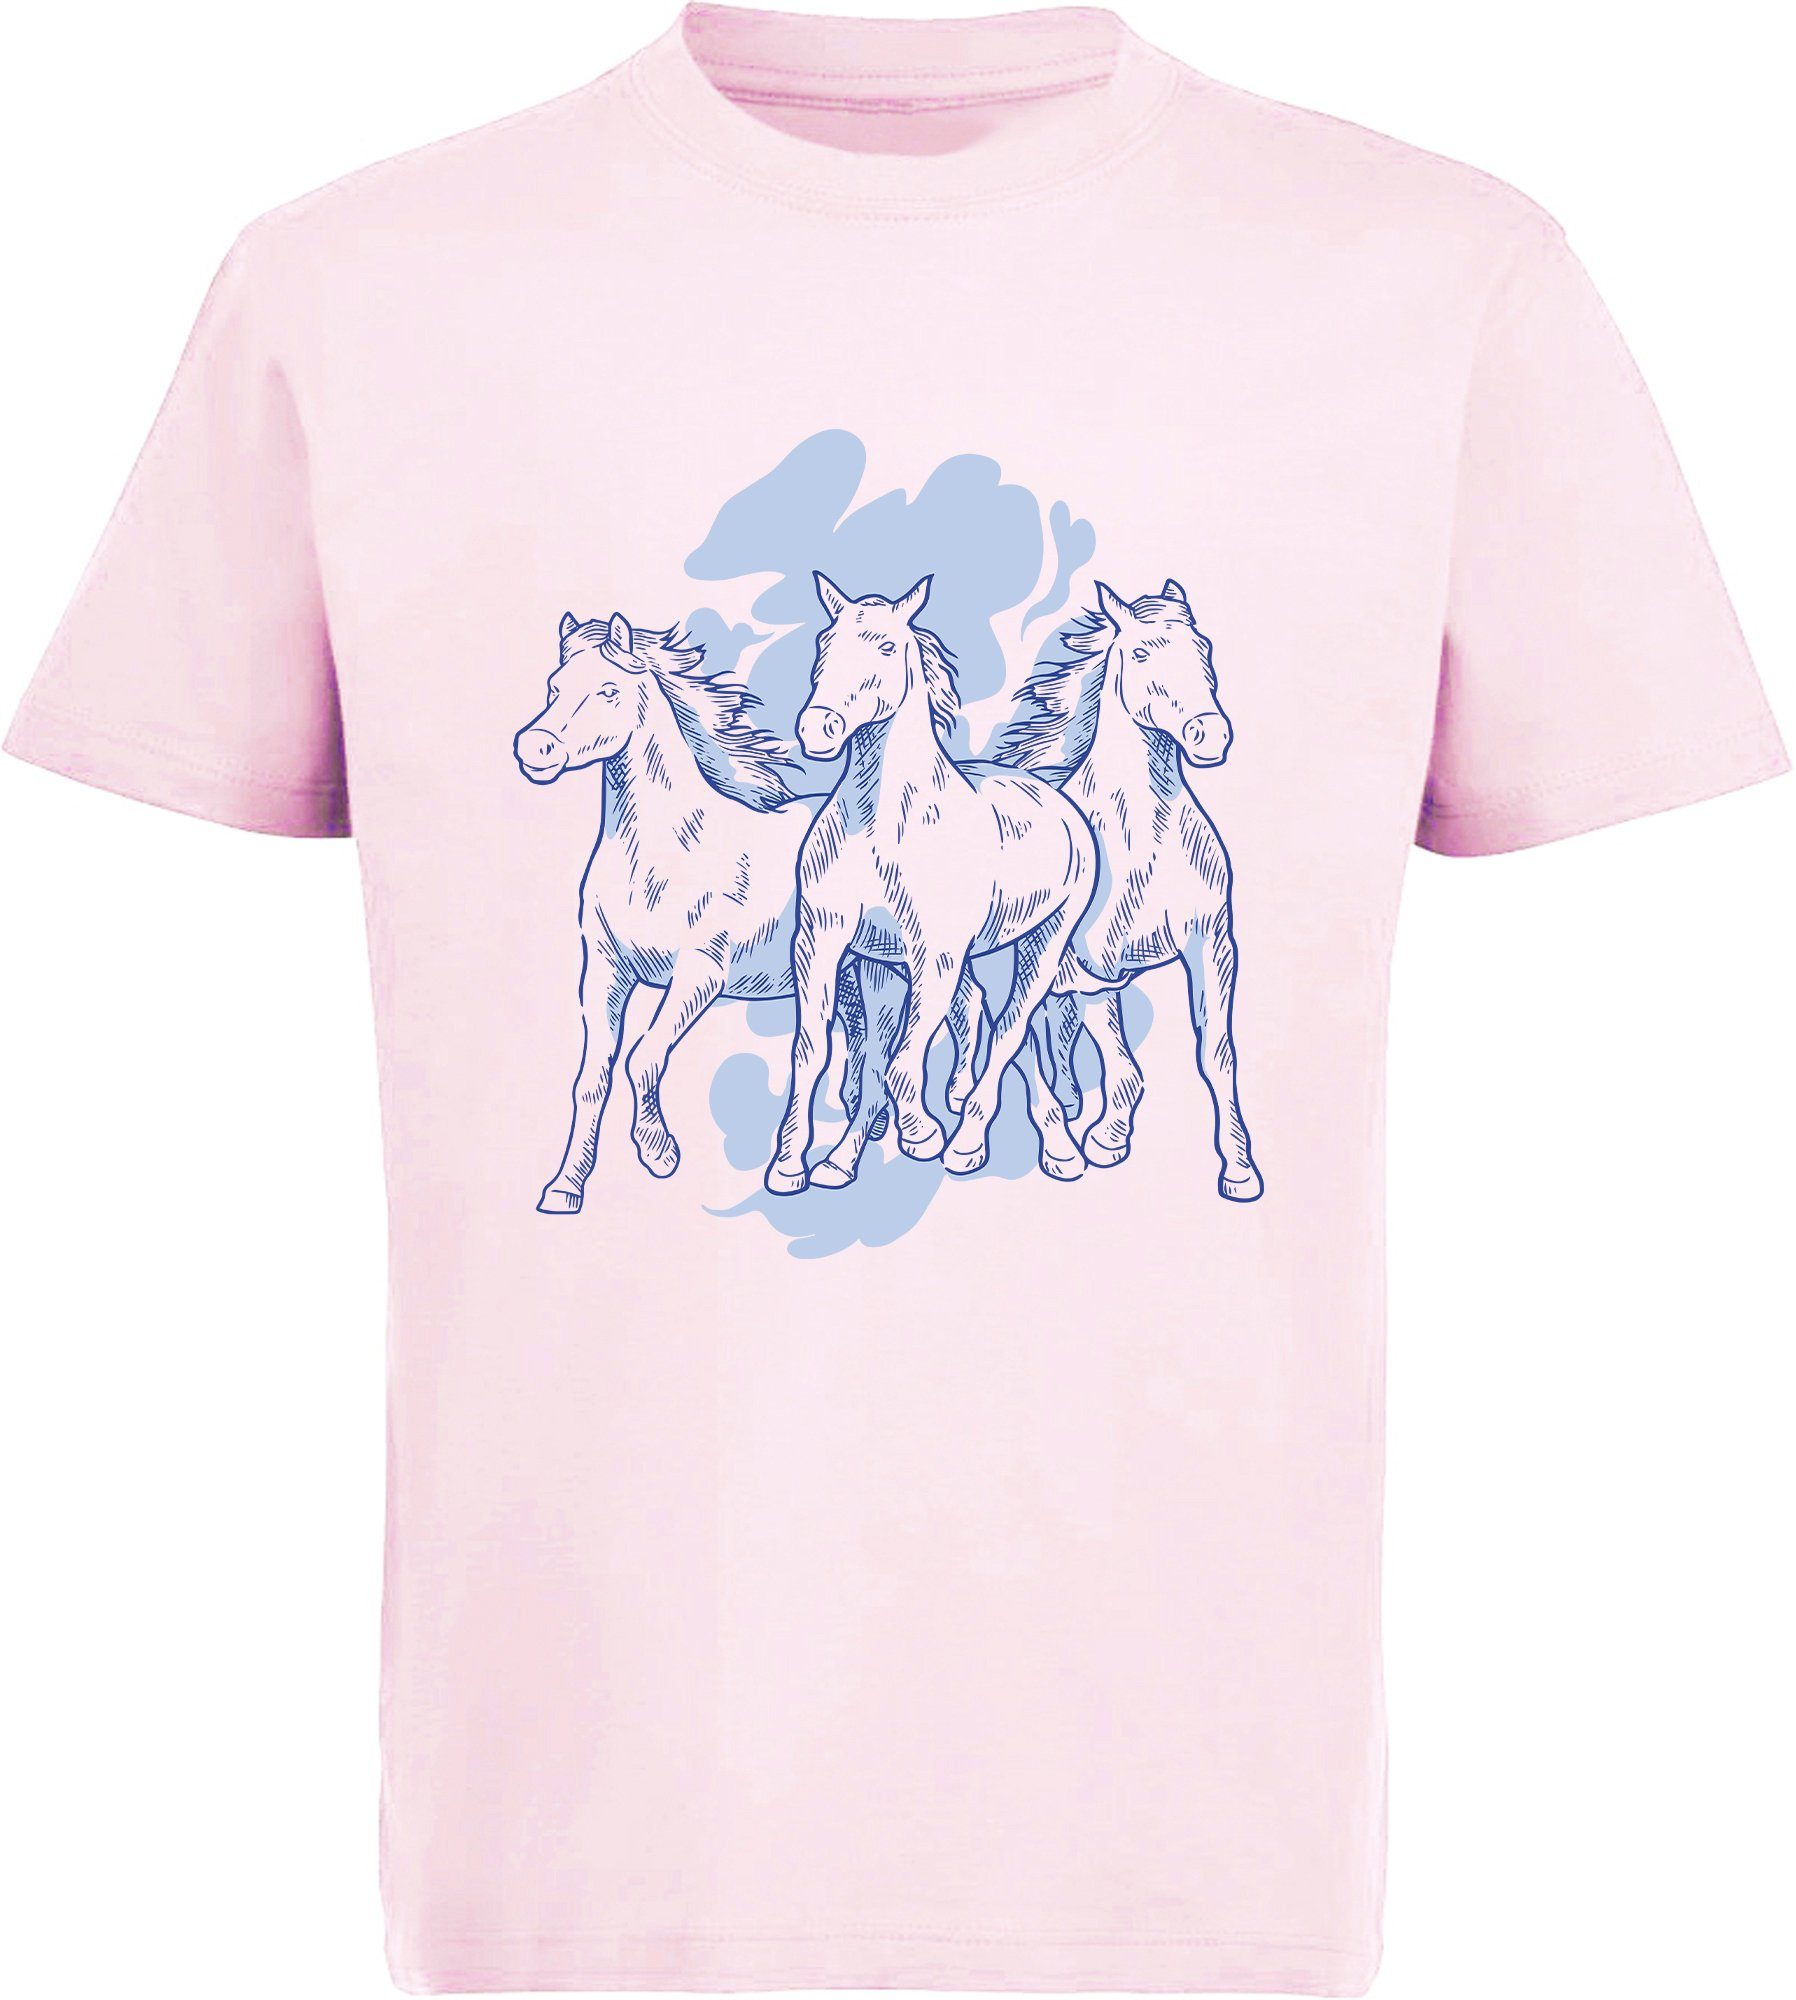 rosa 3 Baumwollshirt Pferden Print-Shirt Aufdruck, Mädchen T-Shirt mit i141 bedrucktes MyDesign24 mit